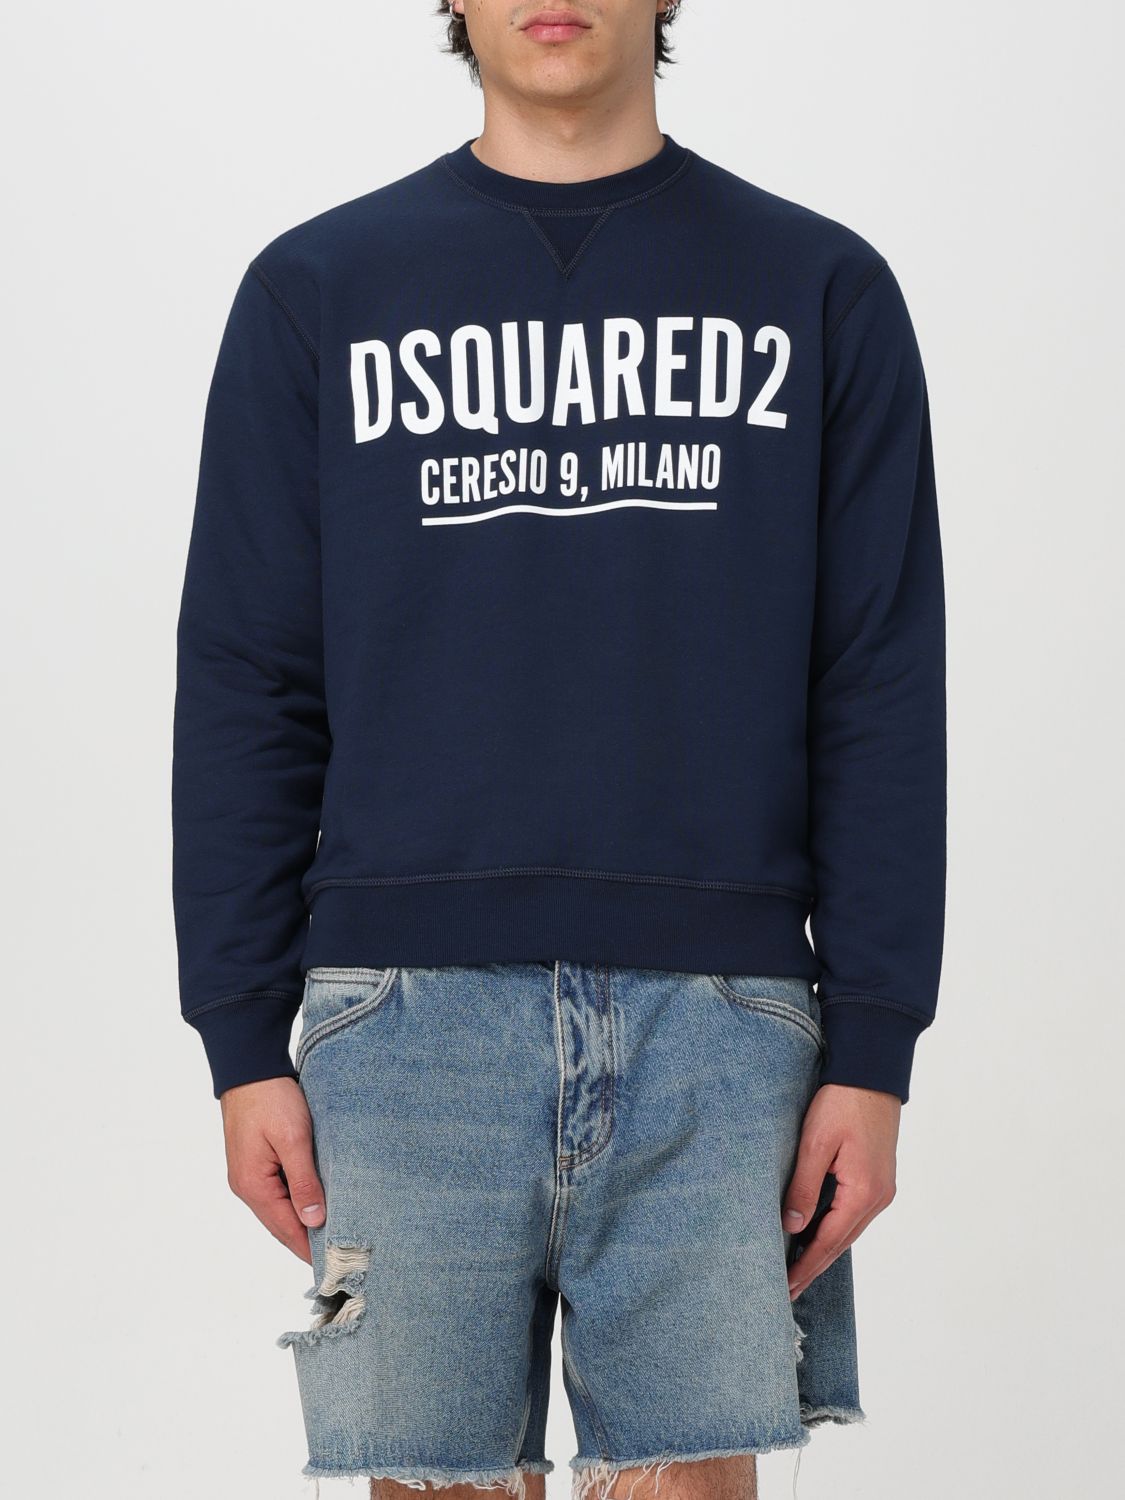 Dsquared2 Sweatshirt DSQUARED2 Men color Navy